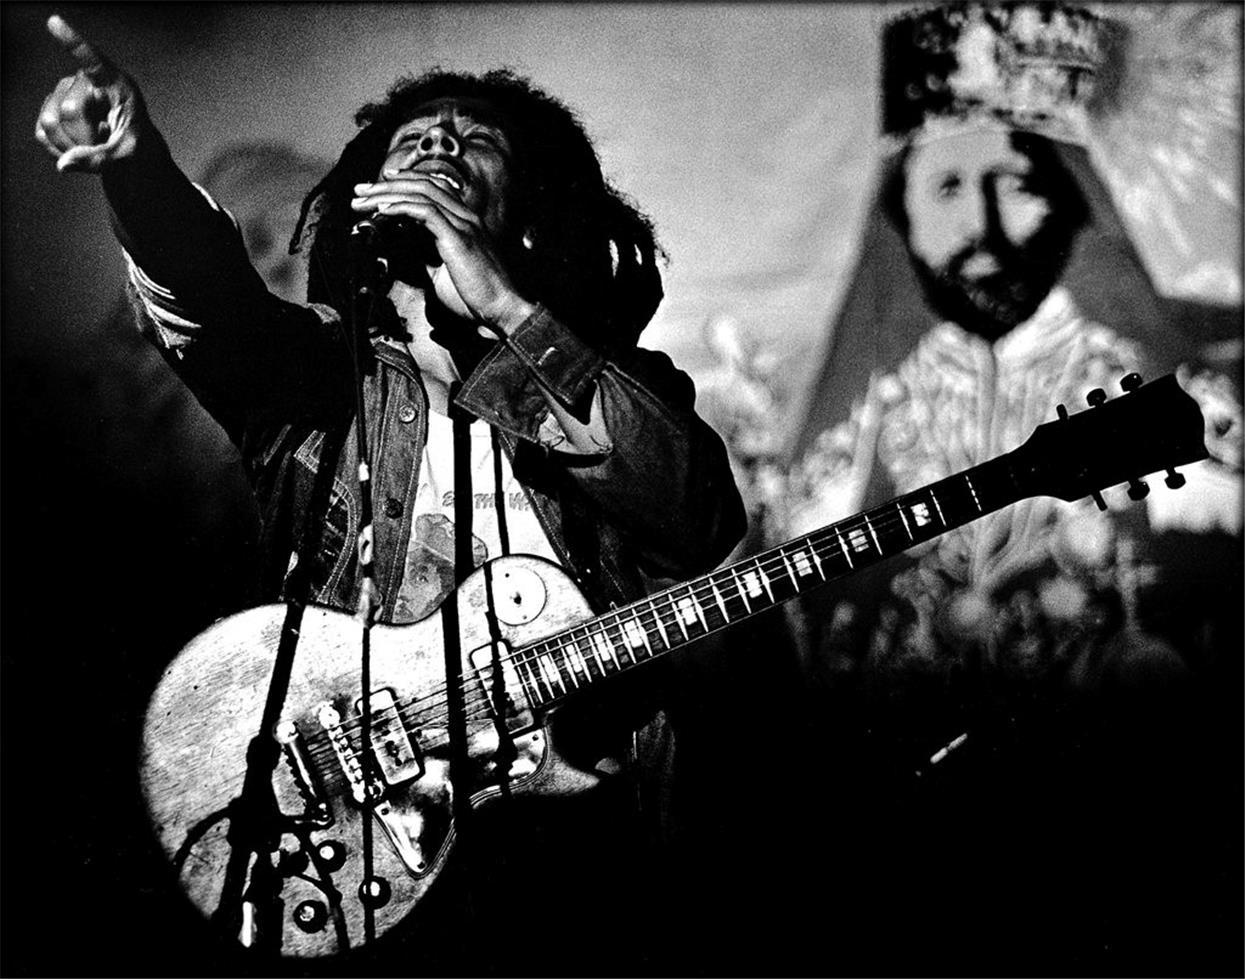 Peter Simon Black and White Photograph - Bob Marley, U.S. Tour, 1976